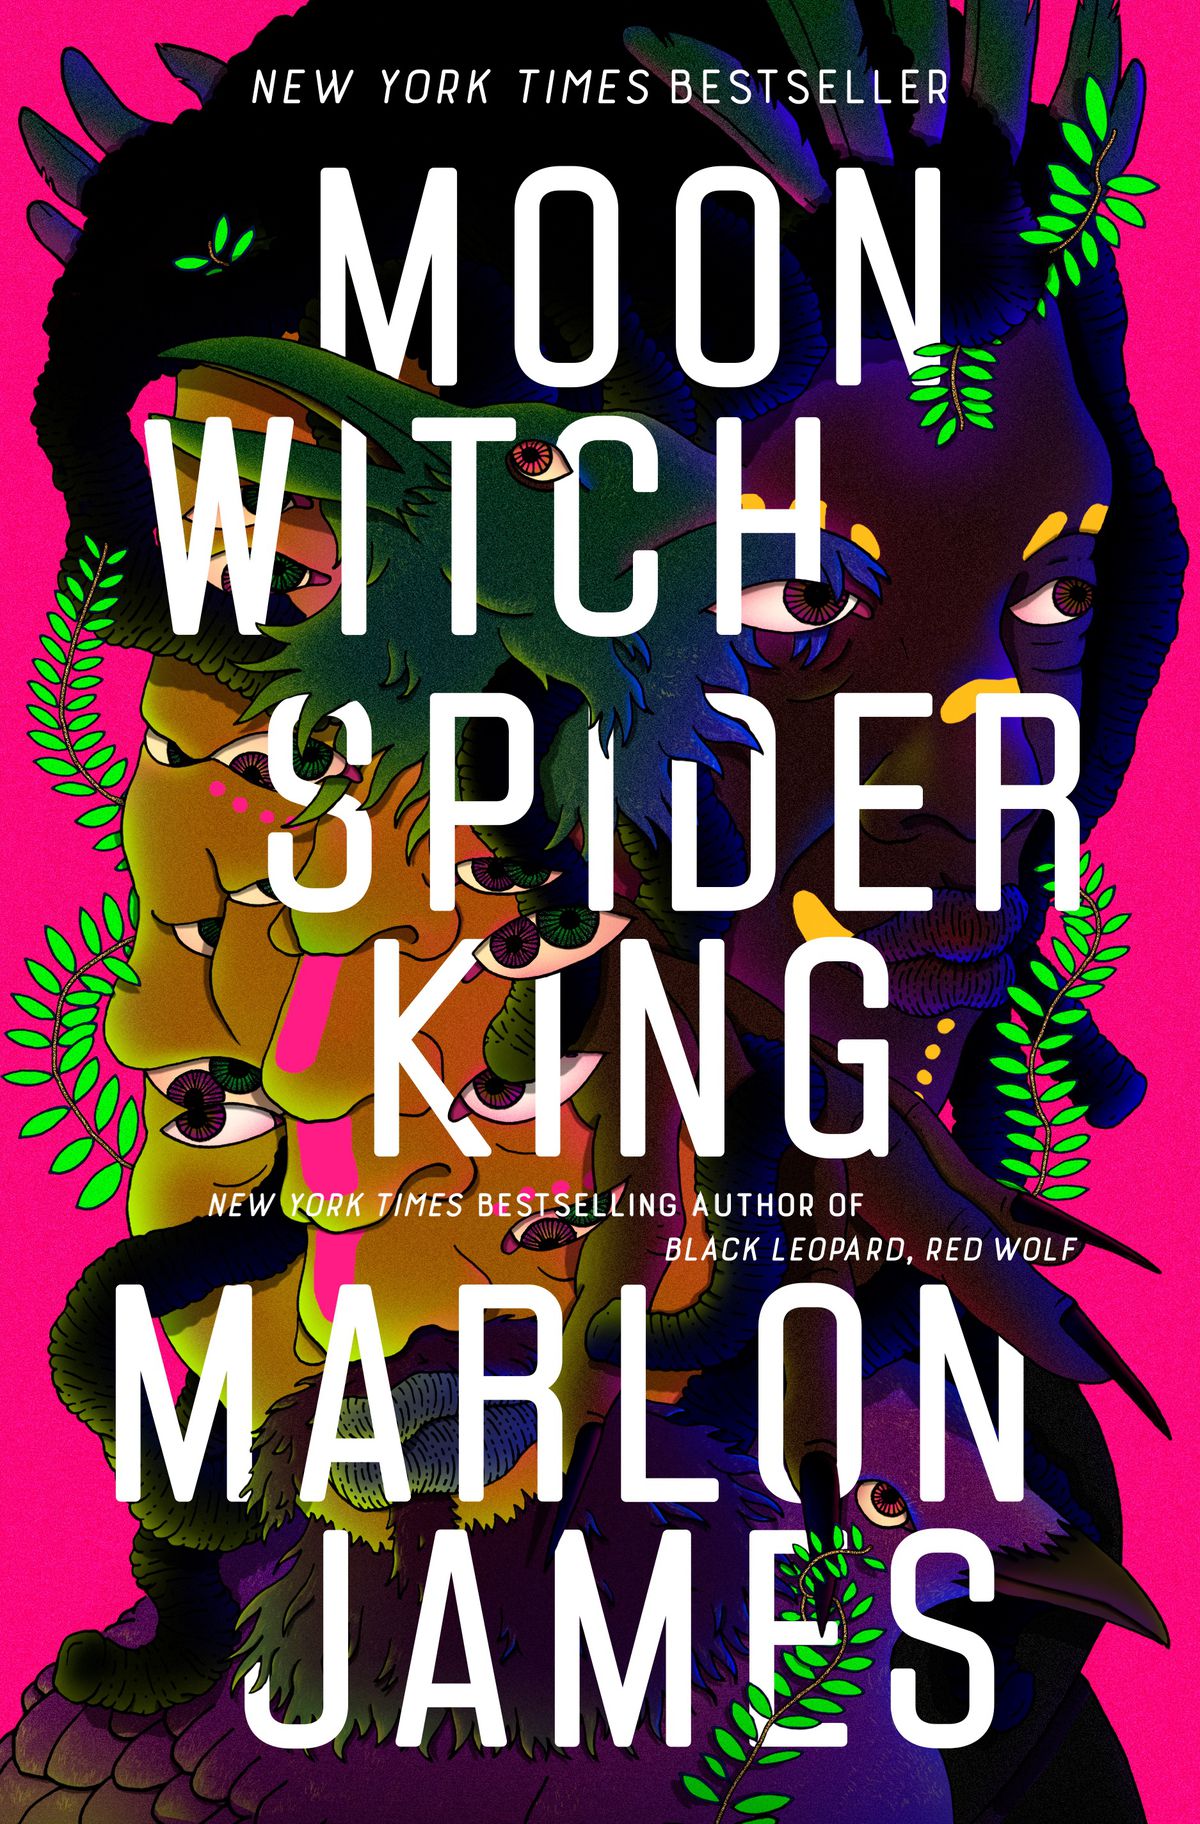 La copertina di Moon Witch, Spider King, che ha un'illustrazione che intreccia un volto con creature e fogliame.  È su uno sfondo rosa caldo.